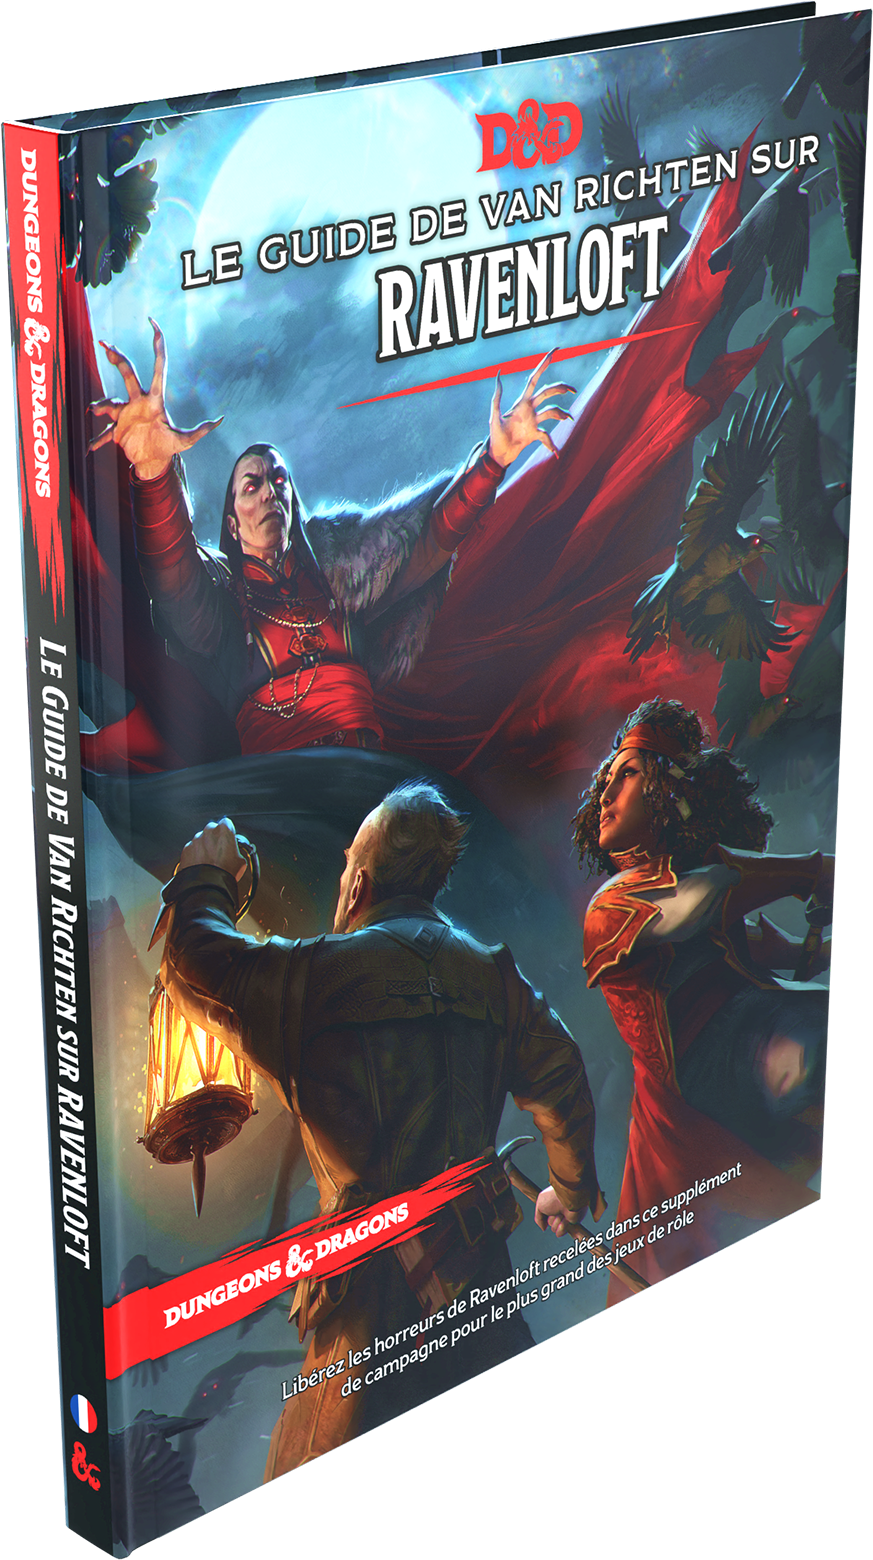 Dungeons & Dragons 5th edition - Le Guide de Van Richten sur Ravenloft (Francais)